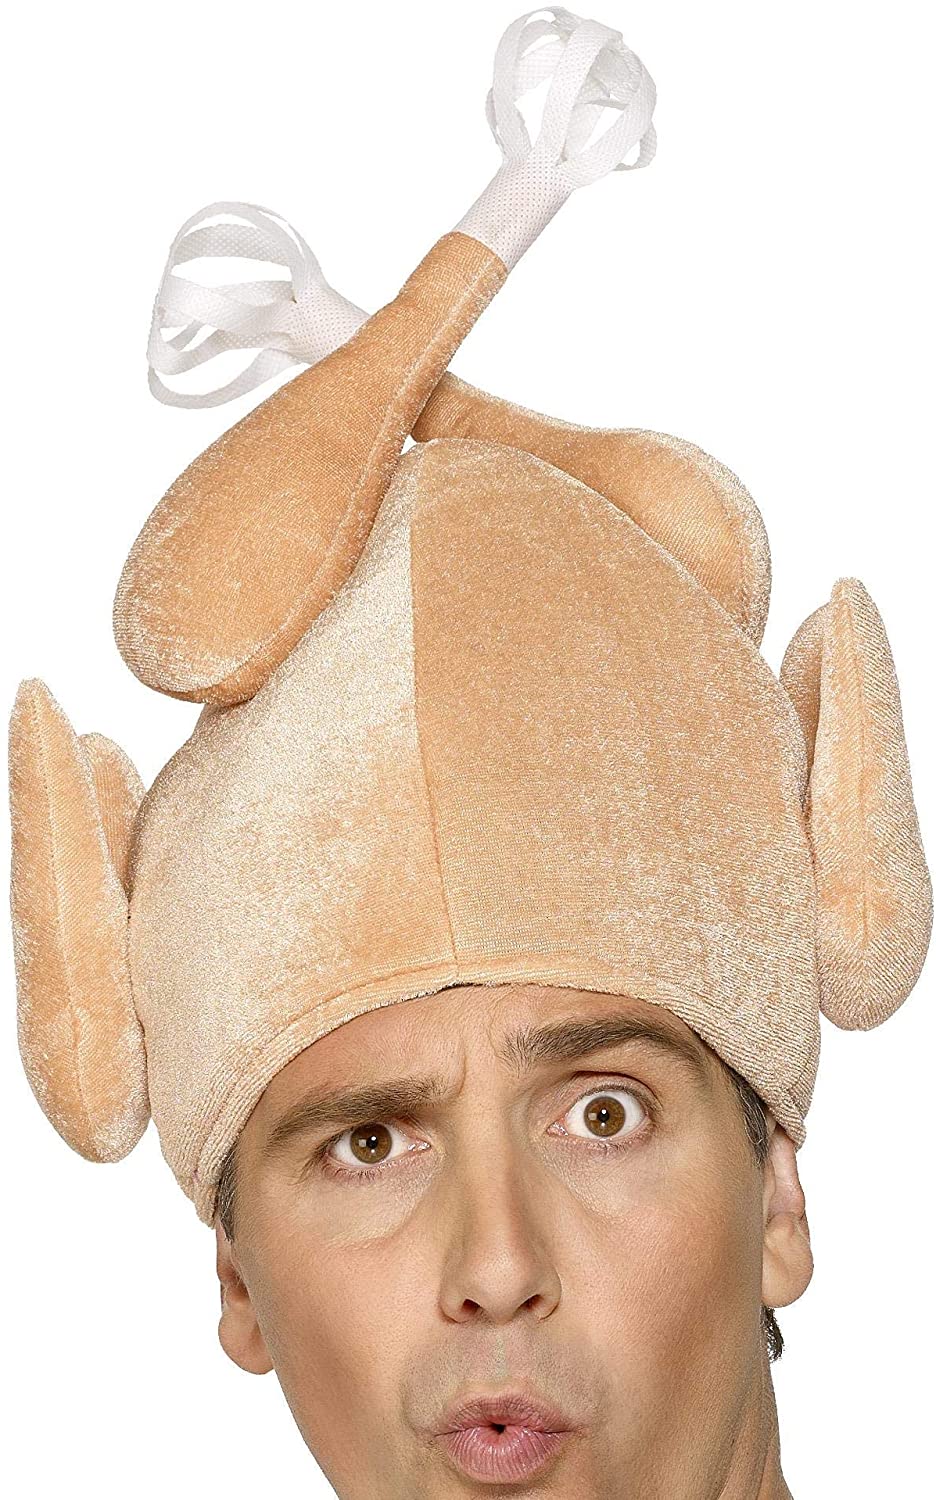 Smiffys Turkey Hat